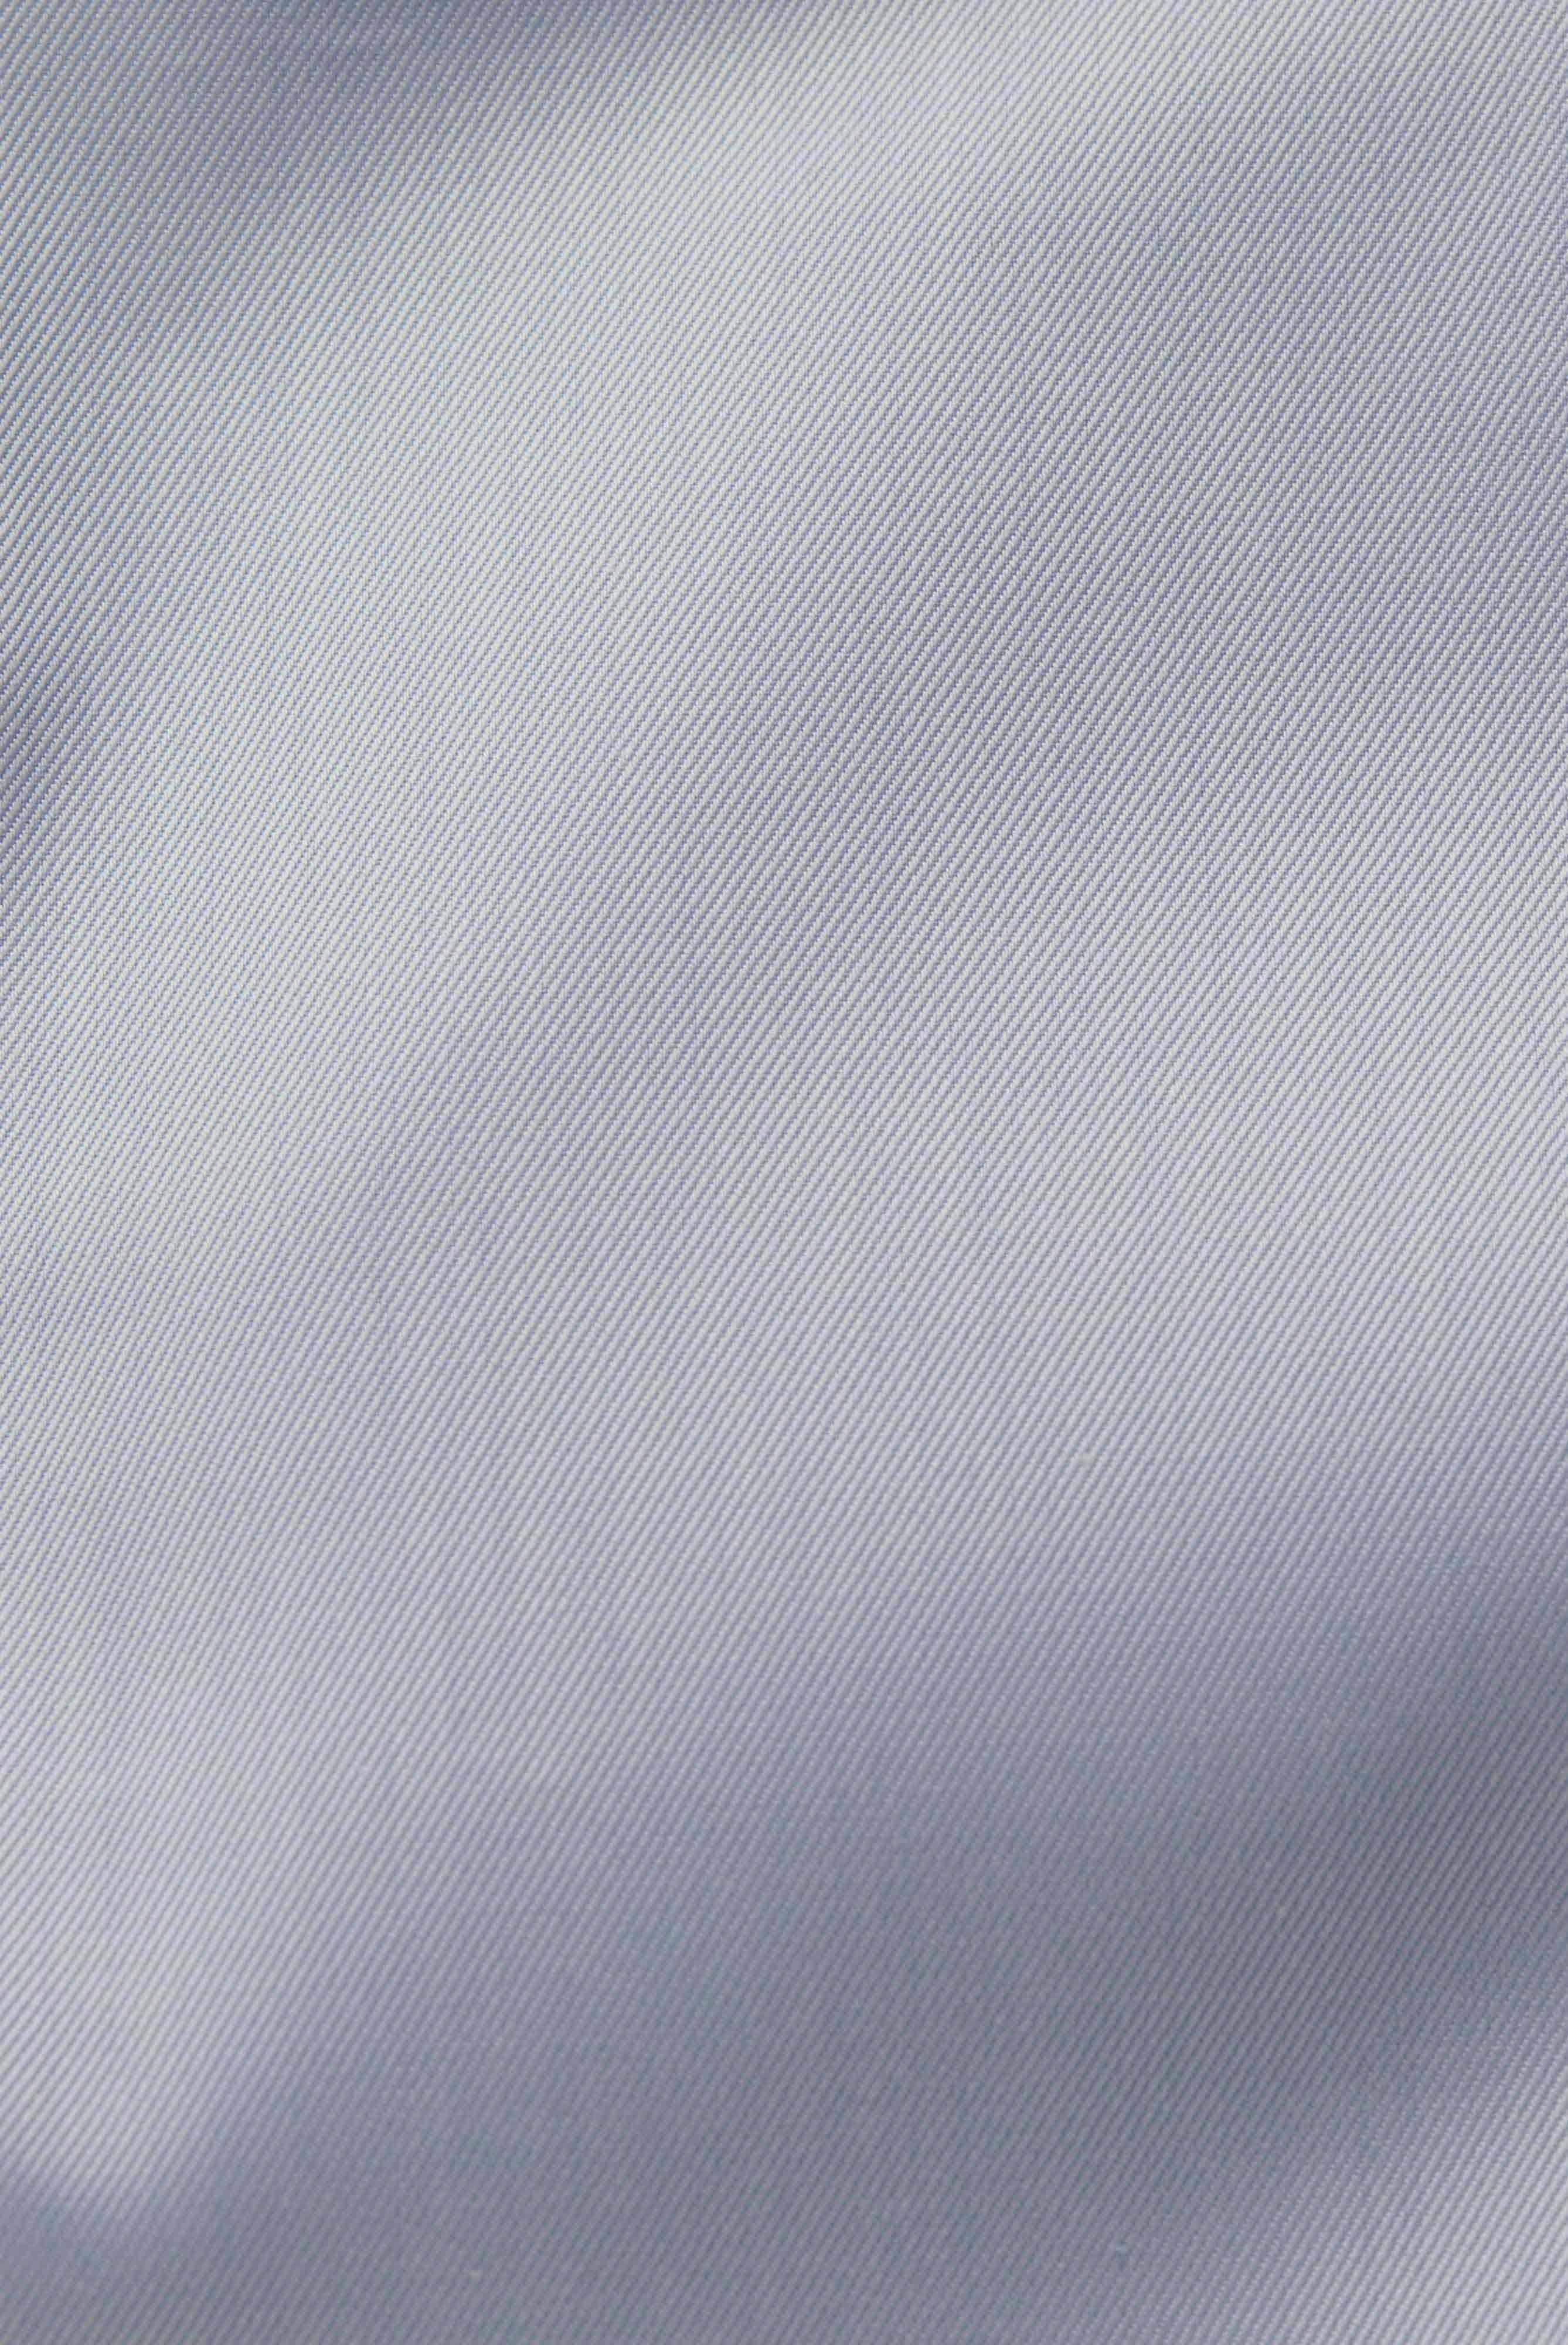 Bügelleichte Hemden+Bügelfreies Twill Hemd Tailor Fit+20.2020.BQ.132241.720.37